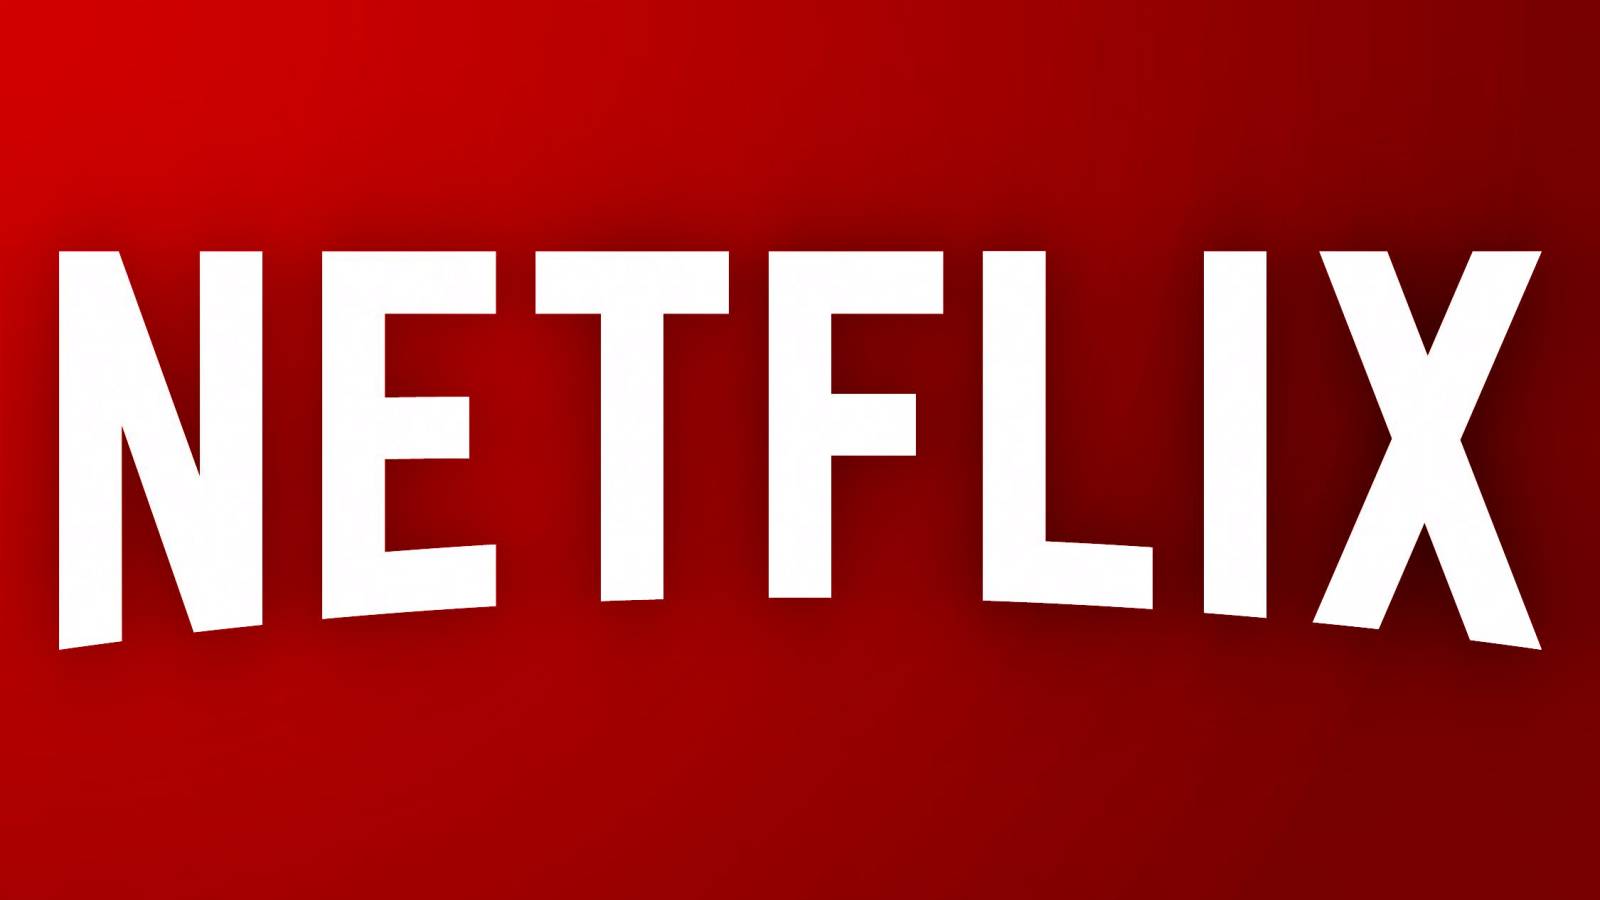 Netflixin lausunto vahvistaa päätöstä merkittävistä muutoksista